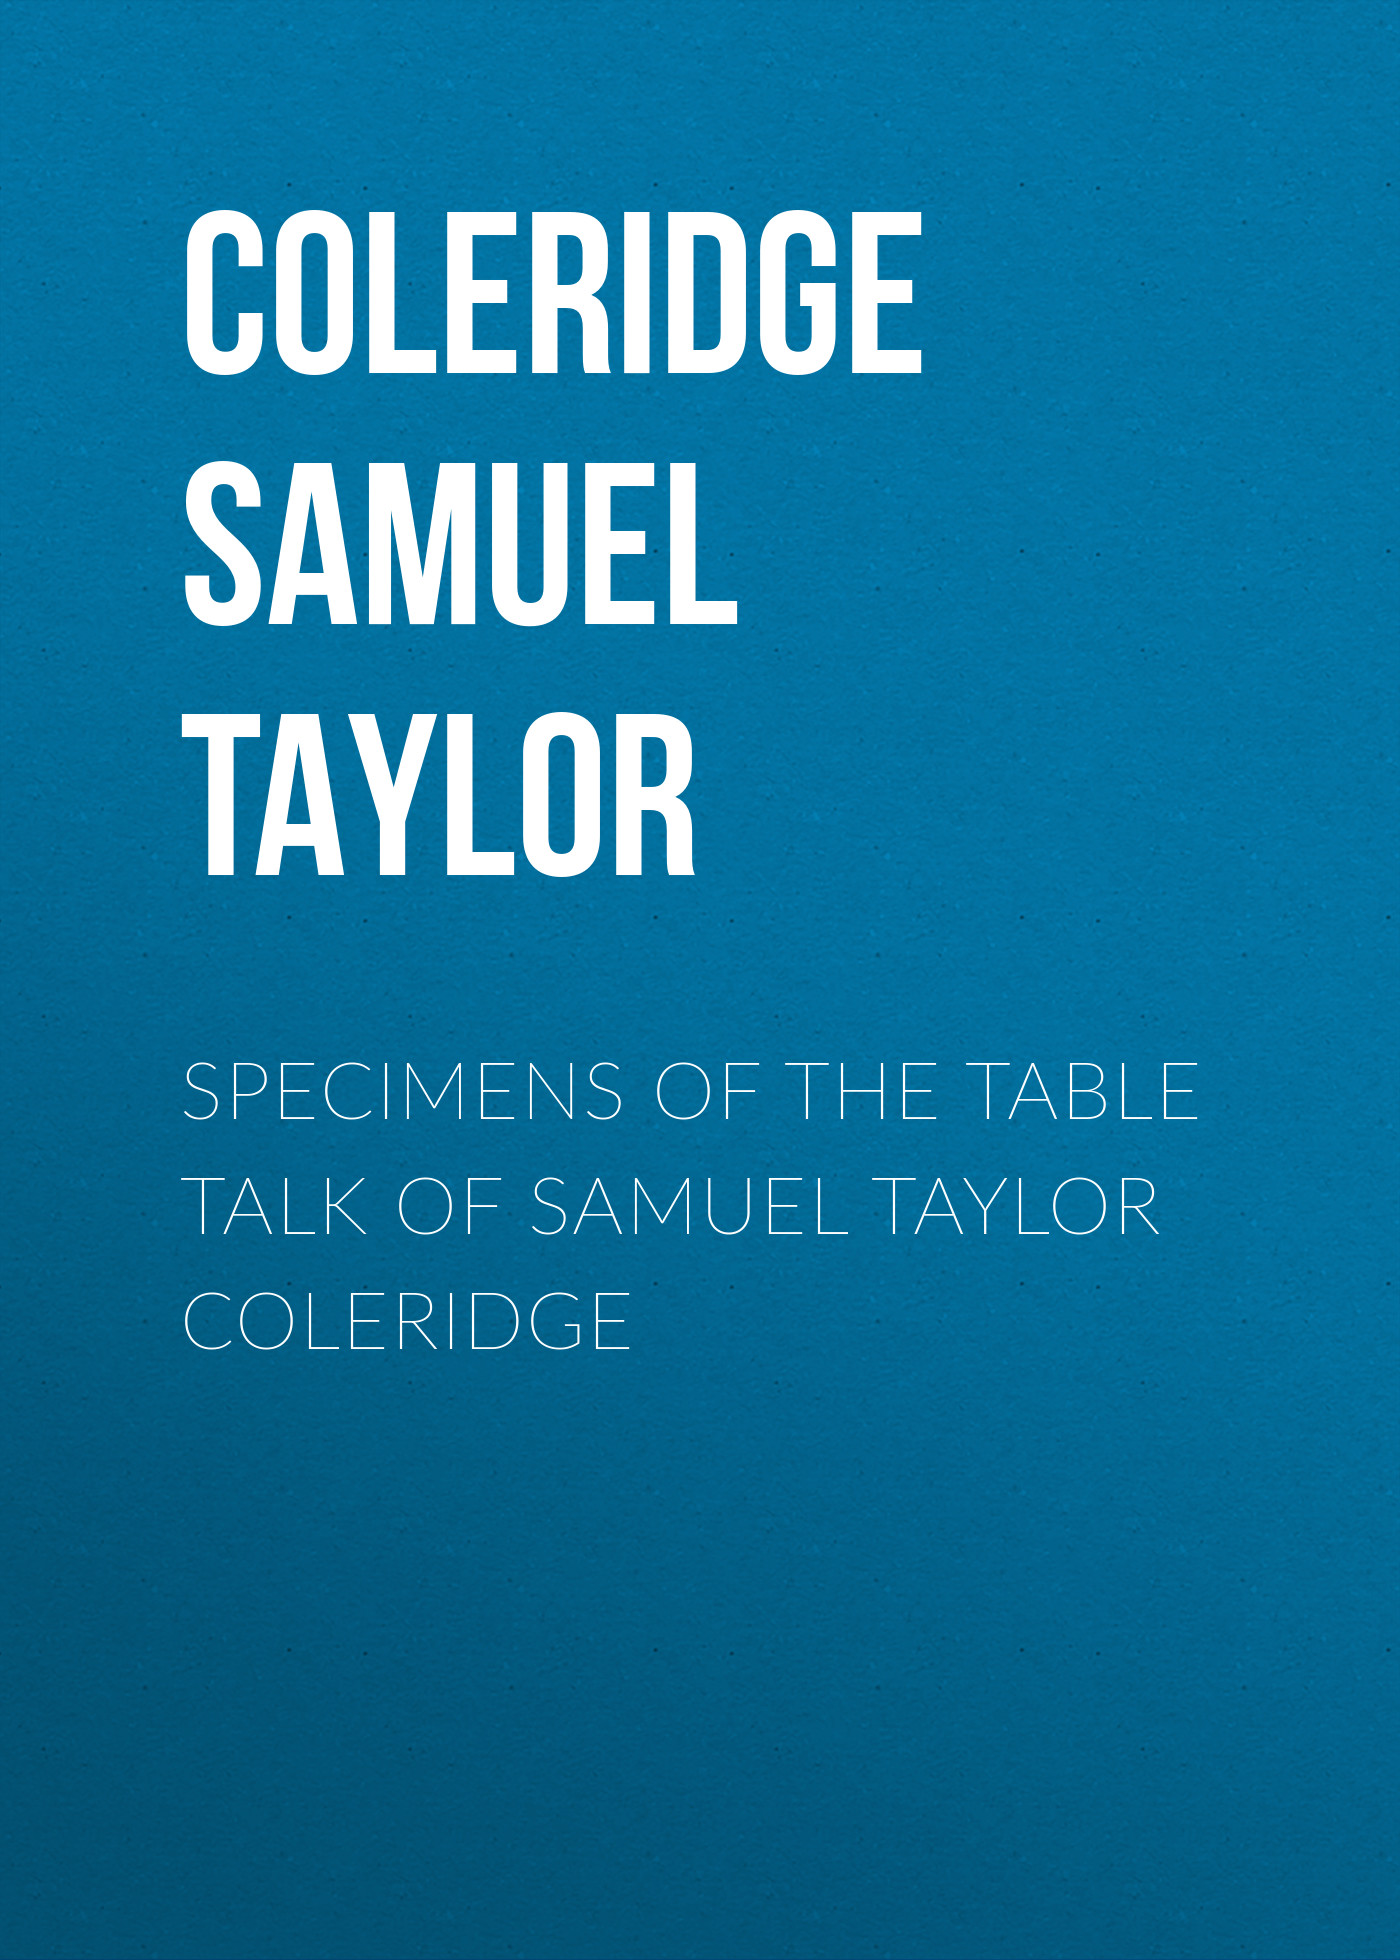 Книга Specimens of the Table Talk of Samuel Taylor Coleridge из серии , созданная Samuel Coleridge, может относится к жанру Биографии и Мемуары, Литература 19 века, Поэзия, Зарубежная старинная литература, Зарубежная классика, Зарубежные стихи. Стоимость электронной книги Specimens of the Table Talk of Samuel Taylor Coleridge с идентификатором 34839214 составляет 0 руб.